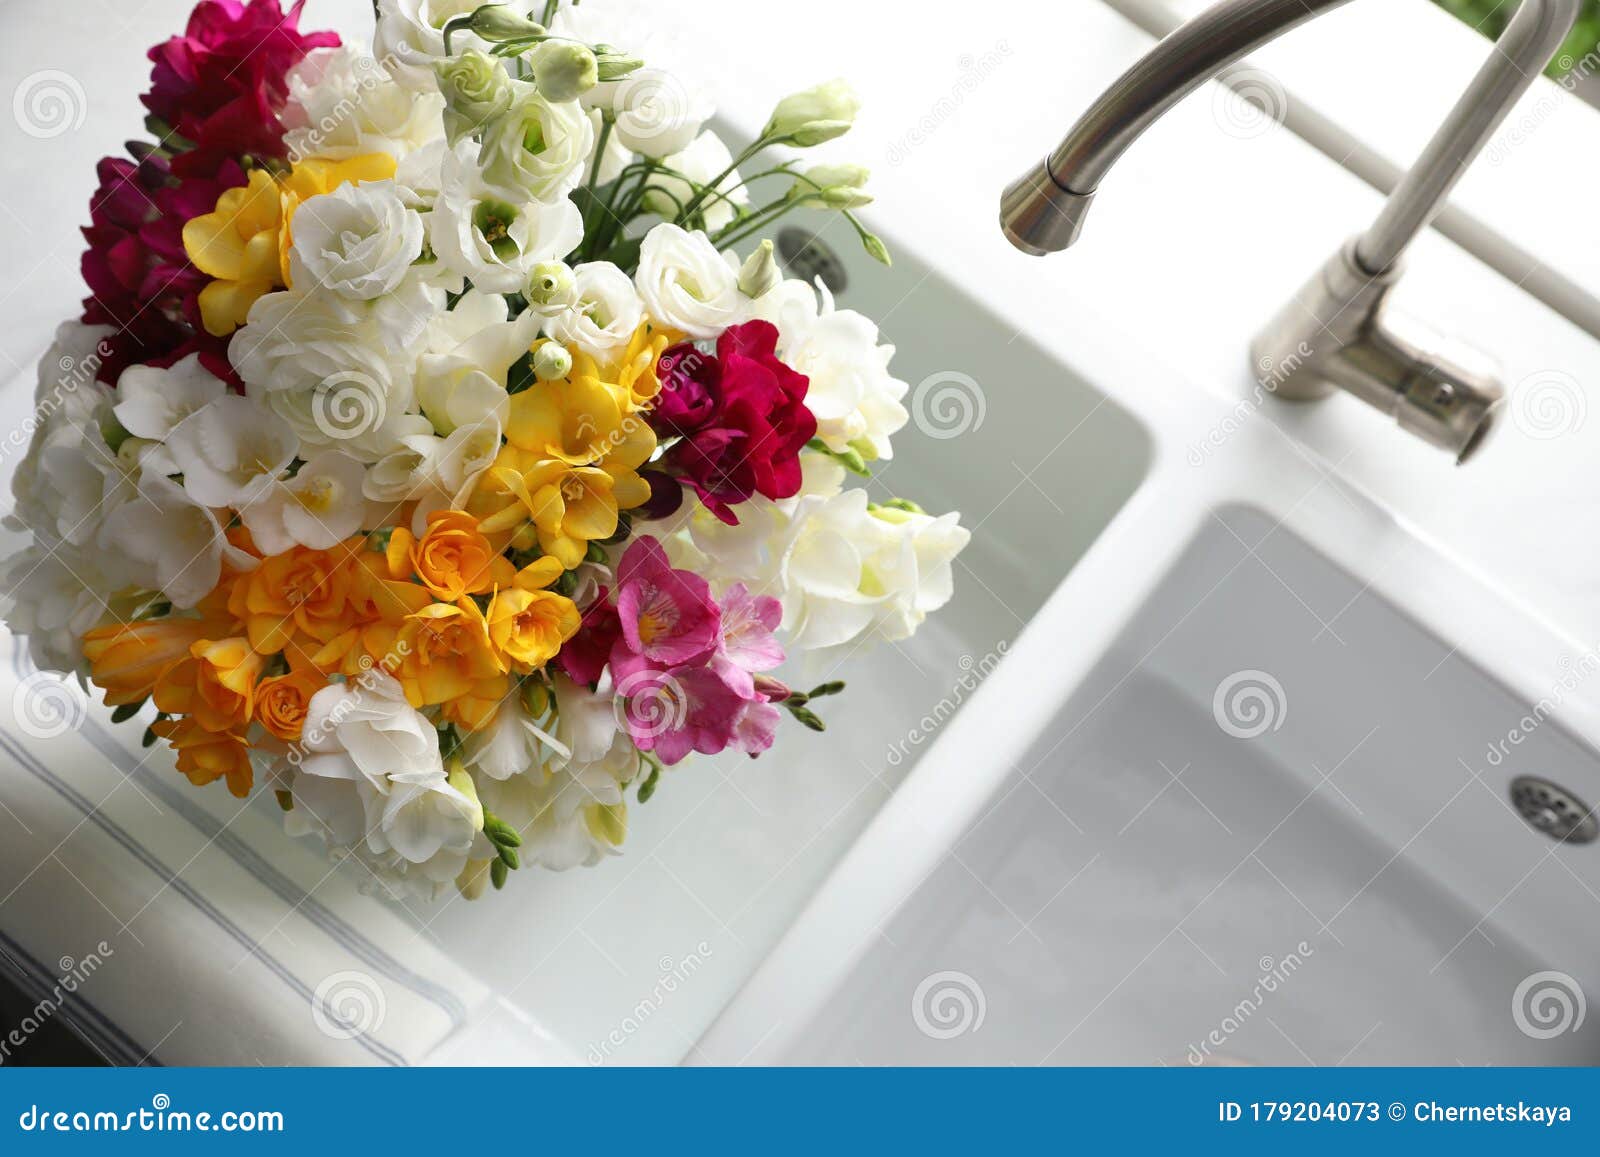 厨房水槽内鲜花美花库存图片 图片包括有许多 颜色 五颜六色 照亮 复活节 节假日 背包